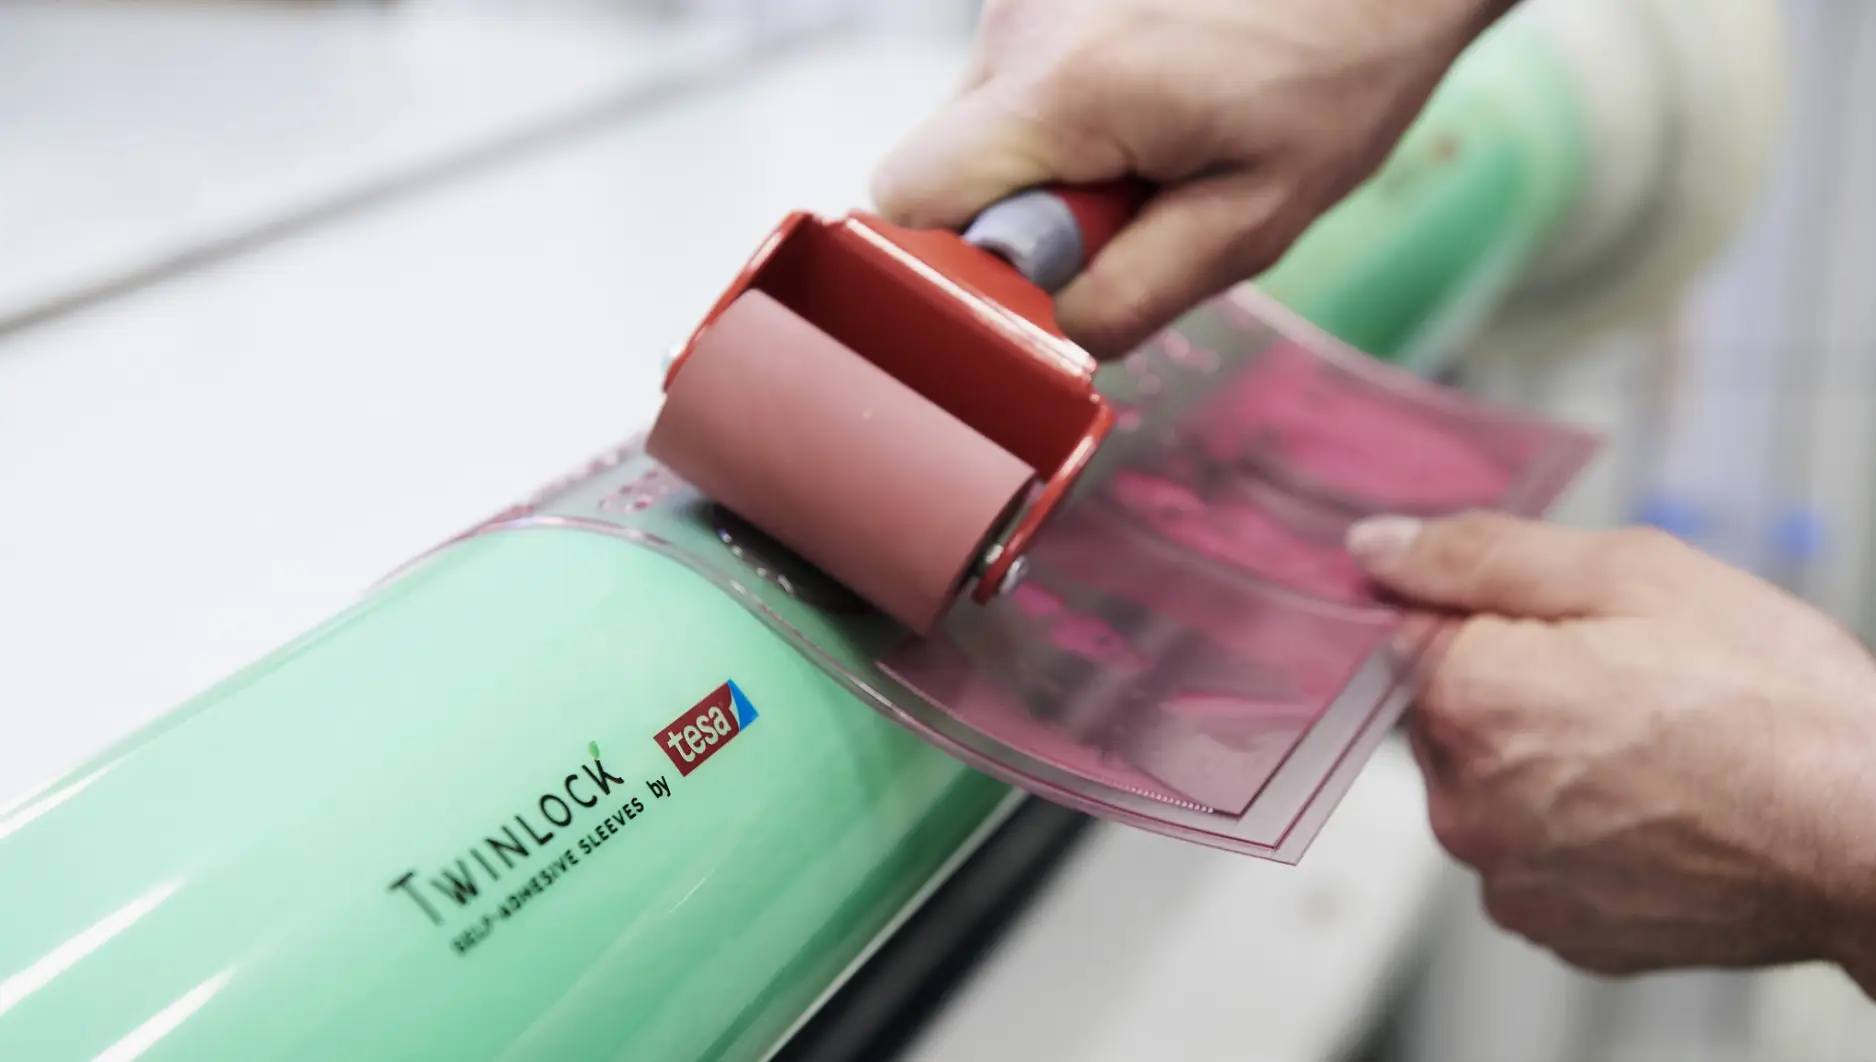 Impressão e papel: o conceito único da tesa® Twinlock oferece uma solução sustentável e reutilizável ao setor da impressão flexográfica. Este processo é utilizado, entre outros casos, para imprimir embalagens de produtos alimentares.